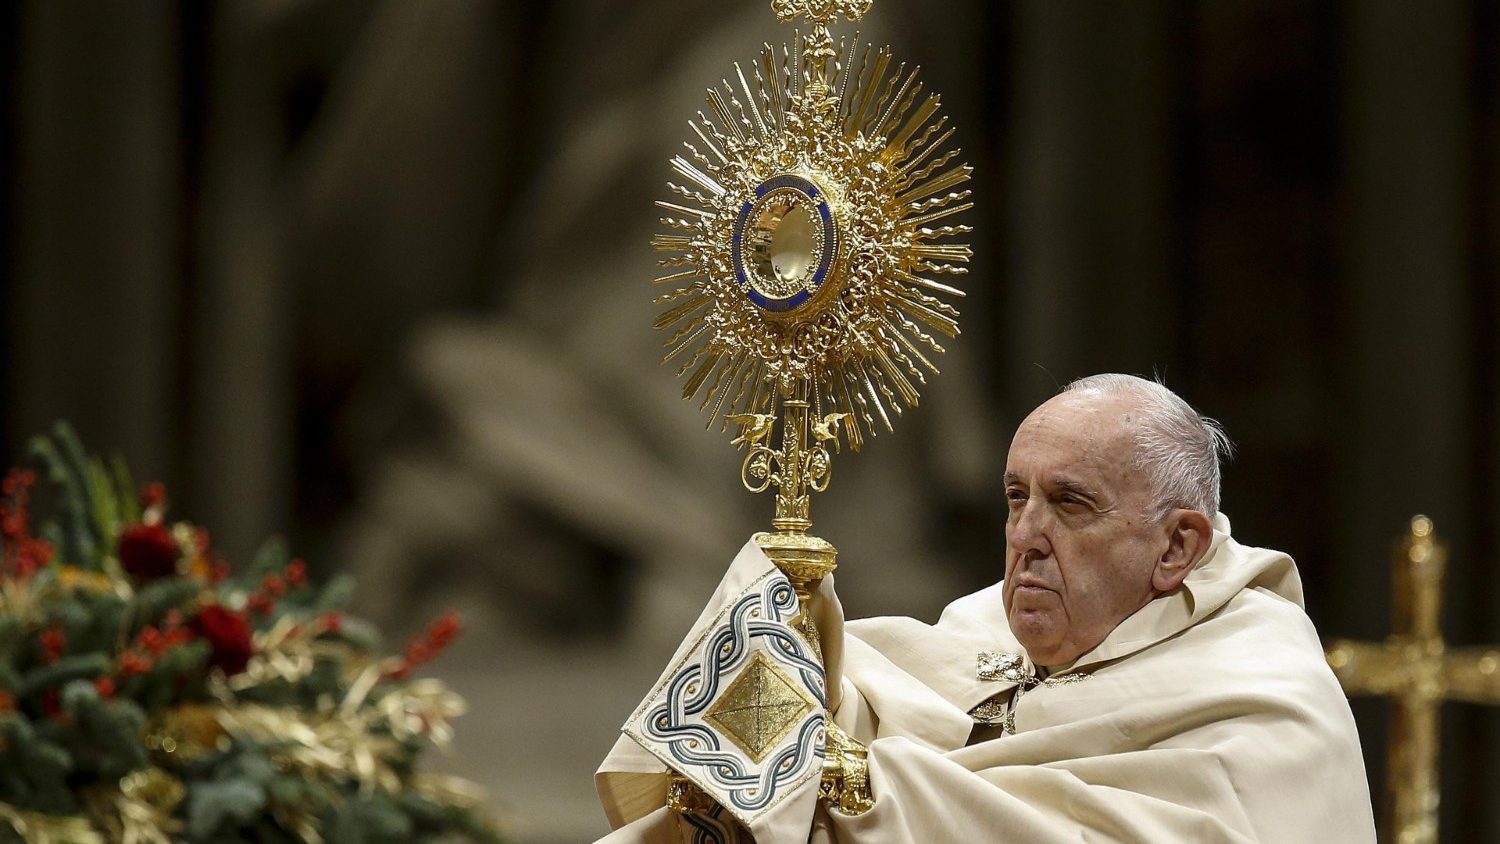 En raison d’une sciatique, le Pape ne célèbrera pas le Te Deum du 31 décembre, ni la messe du 1er janvier 2021 Cq5dam.thumbnail.cropped.1500.844